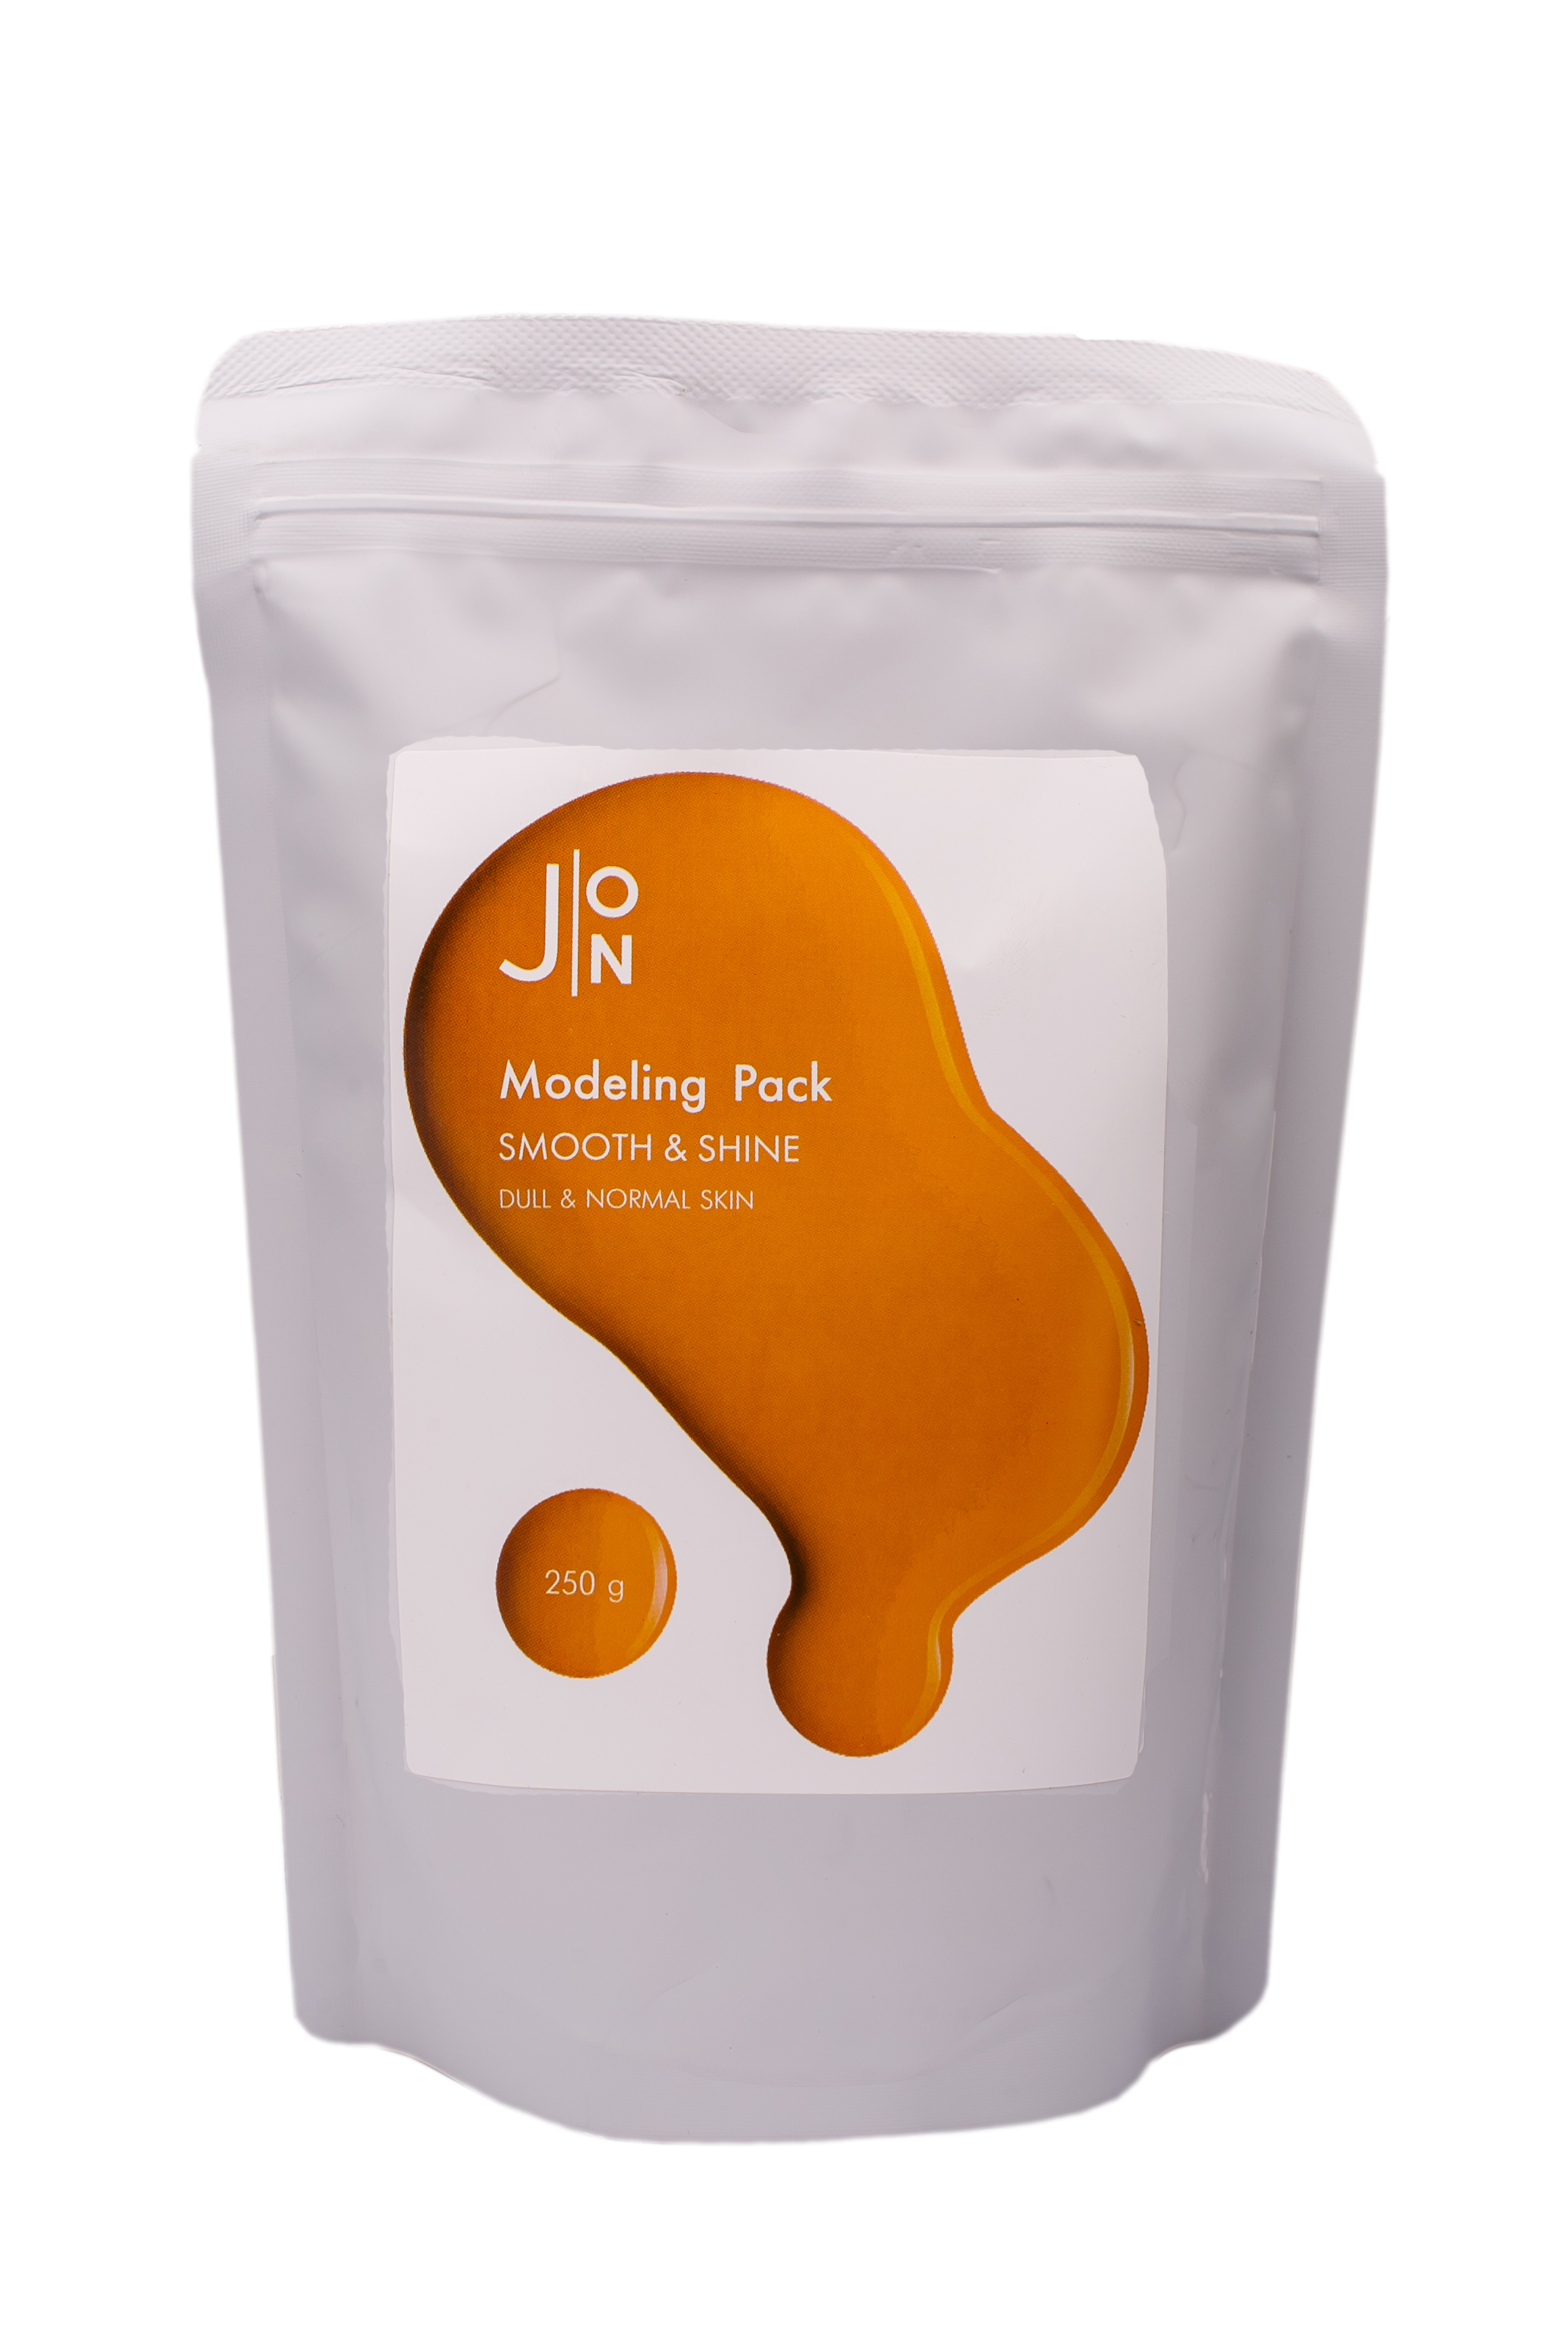 J:ON Smooth & Shine Modeling Pack Альгинатная маска для придания гладкости и сияния кожи лица, 250г